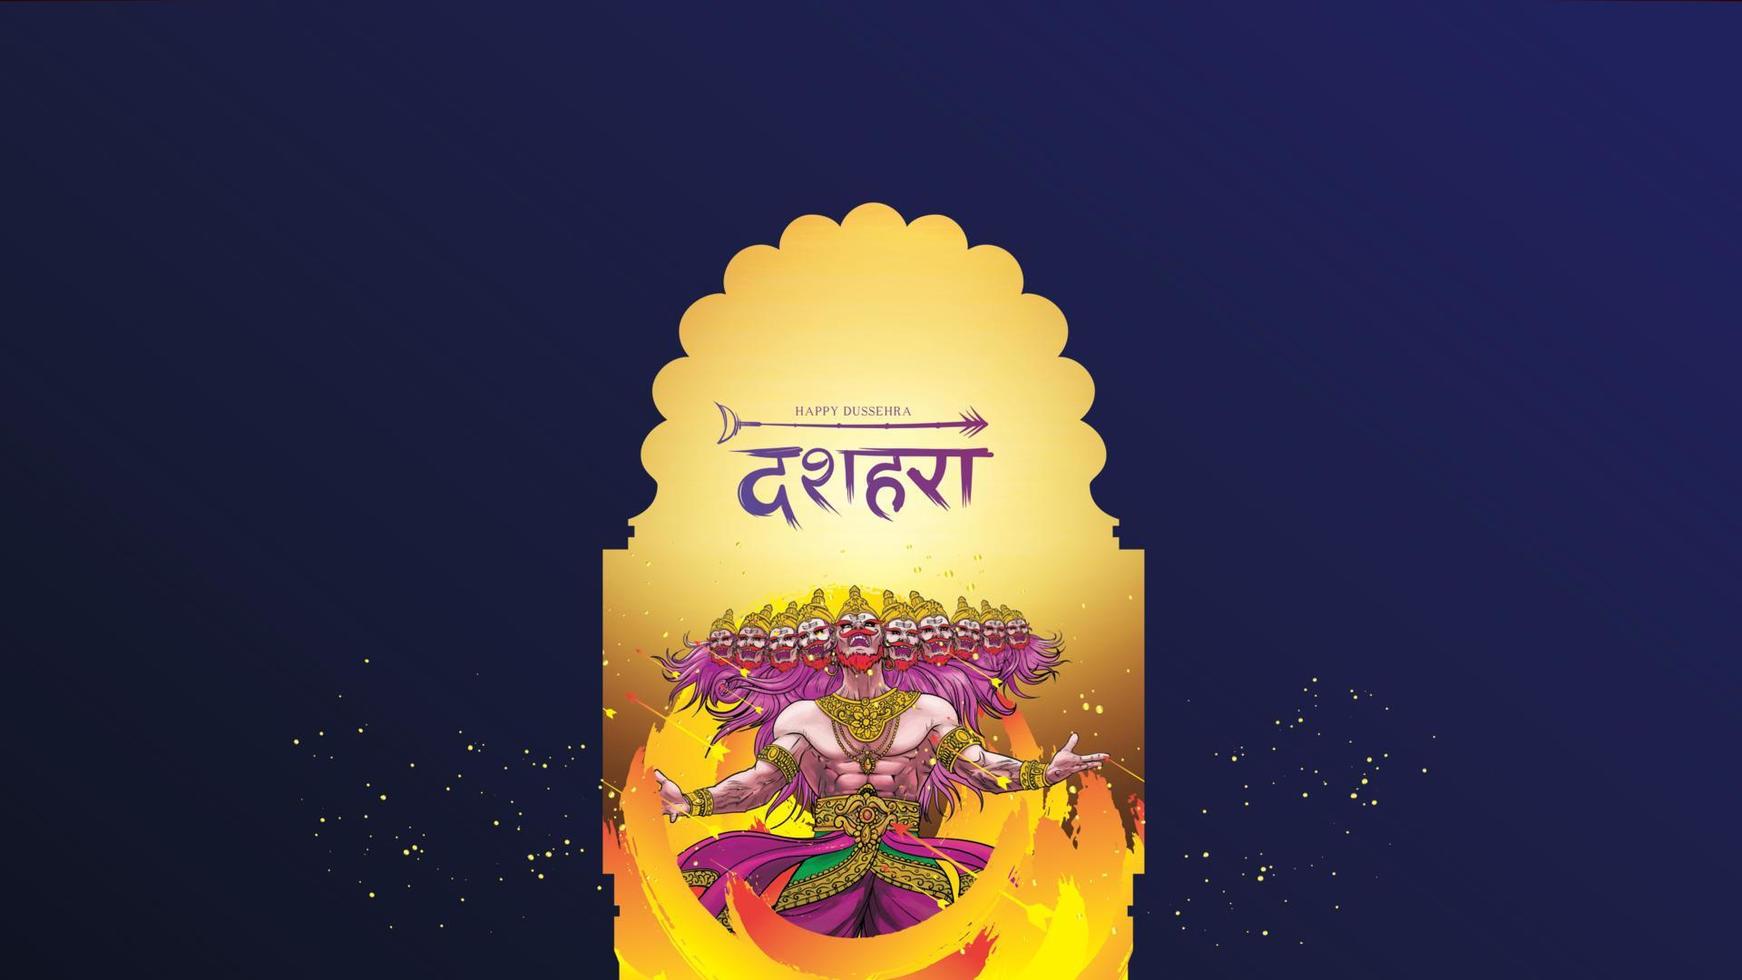 kreativ vektorillustration av lord rama som dödar ravana i glad dussehra navratri affischfestival i Indien. översättning dussehra vektor